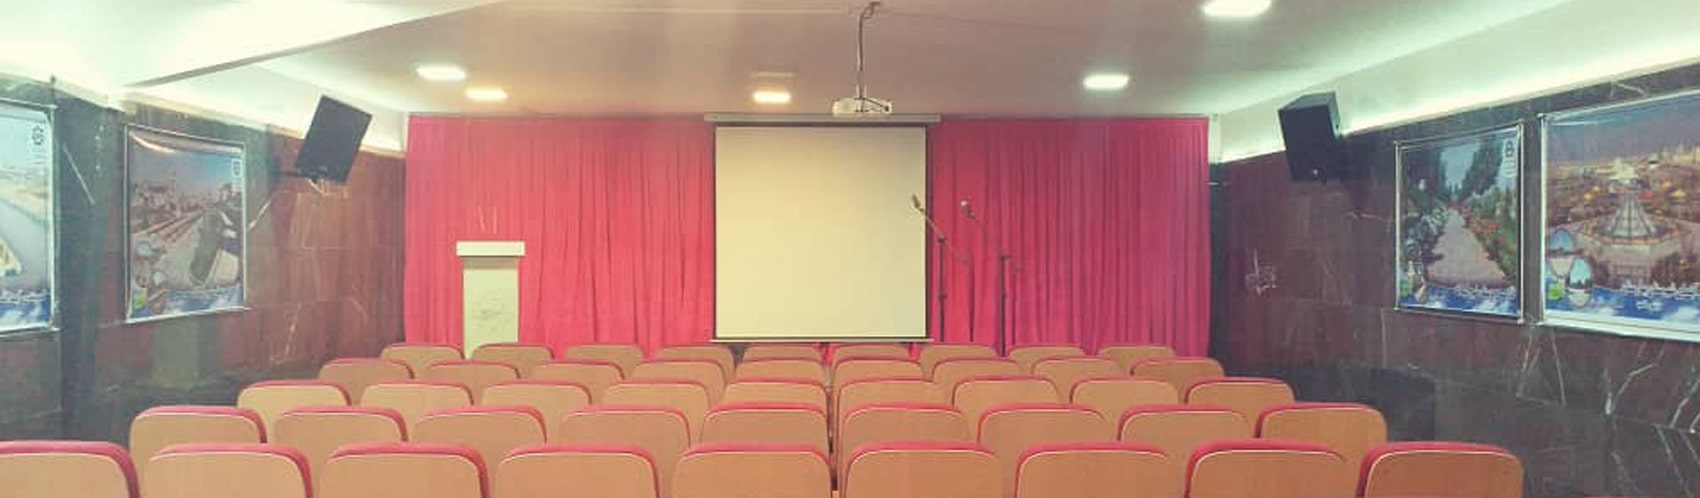 سیستم صوت جانبی سالن آمفی تئاتر- فرهنگ سرای صالحیه